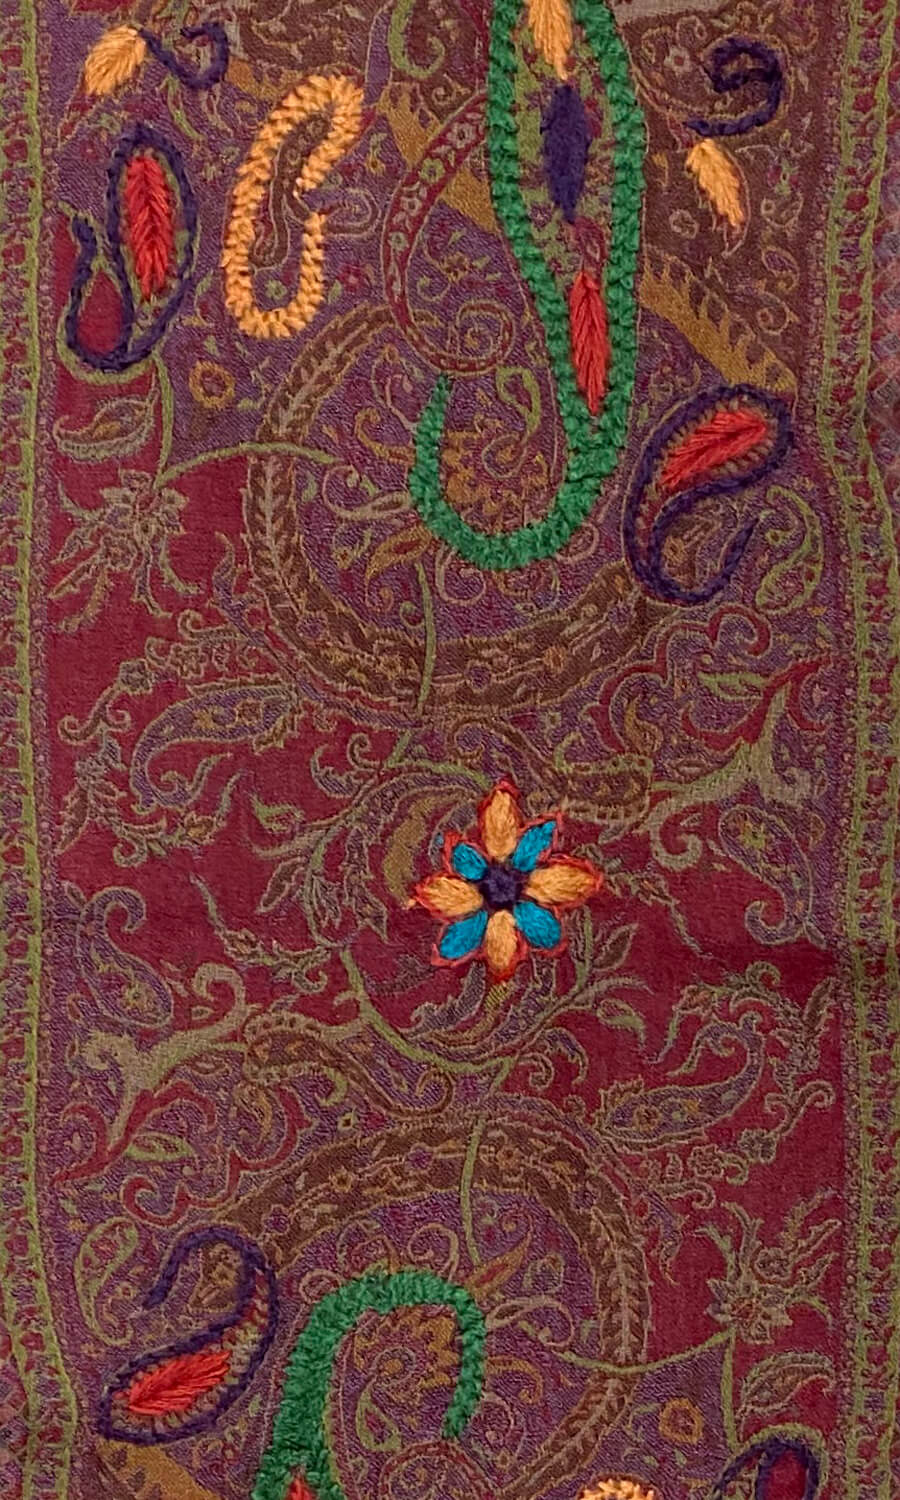 "Bina" - bestickter Schal aus Merinowolle